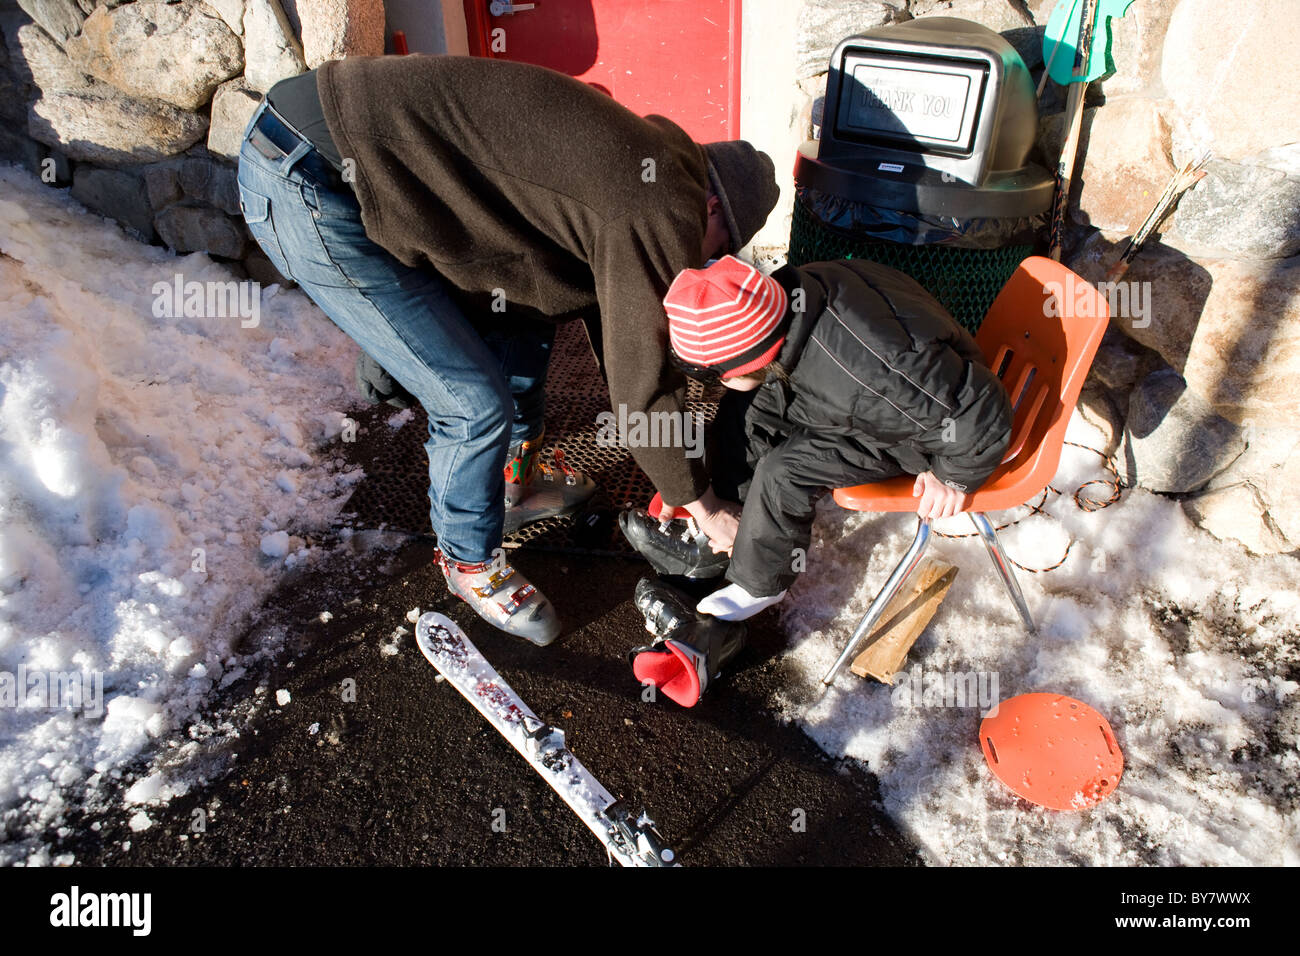 Vater seinen Sohn entfernen Skischuh zu helfen Stockfoto